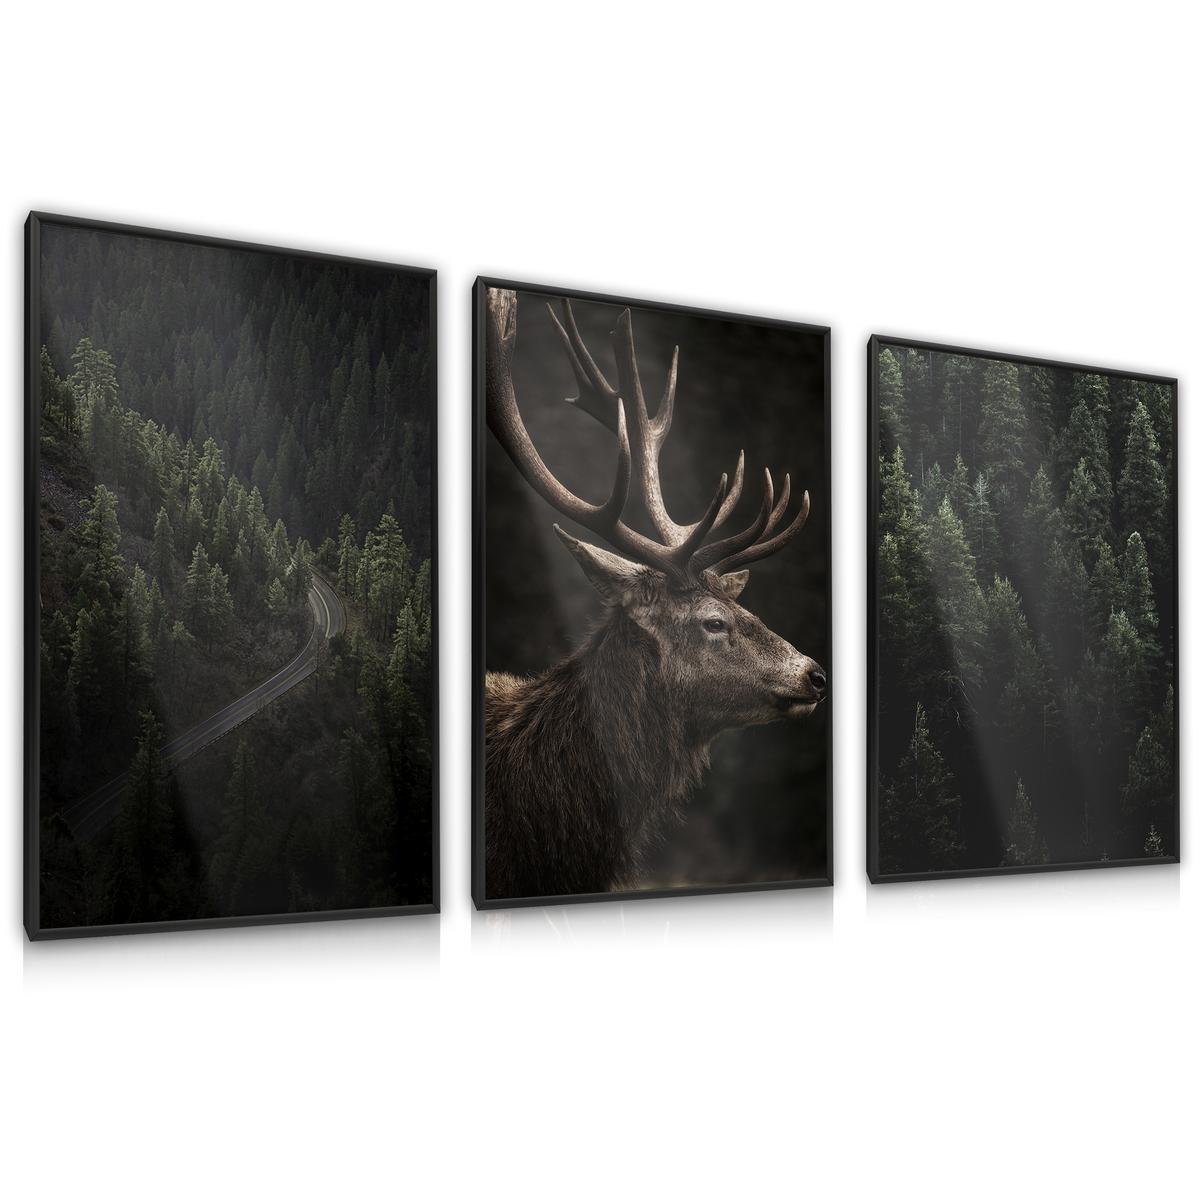 ZESTAW 3x Plakat Ścienny W Ramie JELEŃ Las Krajobrazy Efekt 3D 60x80cm nr. 1